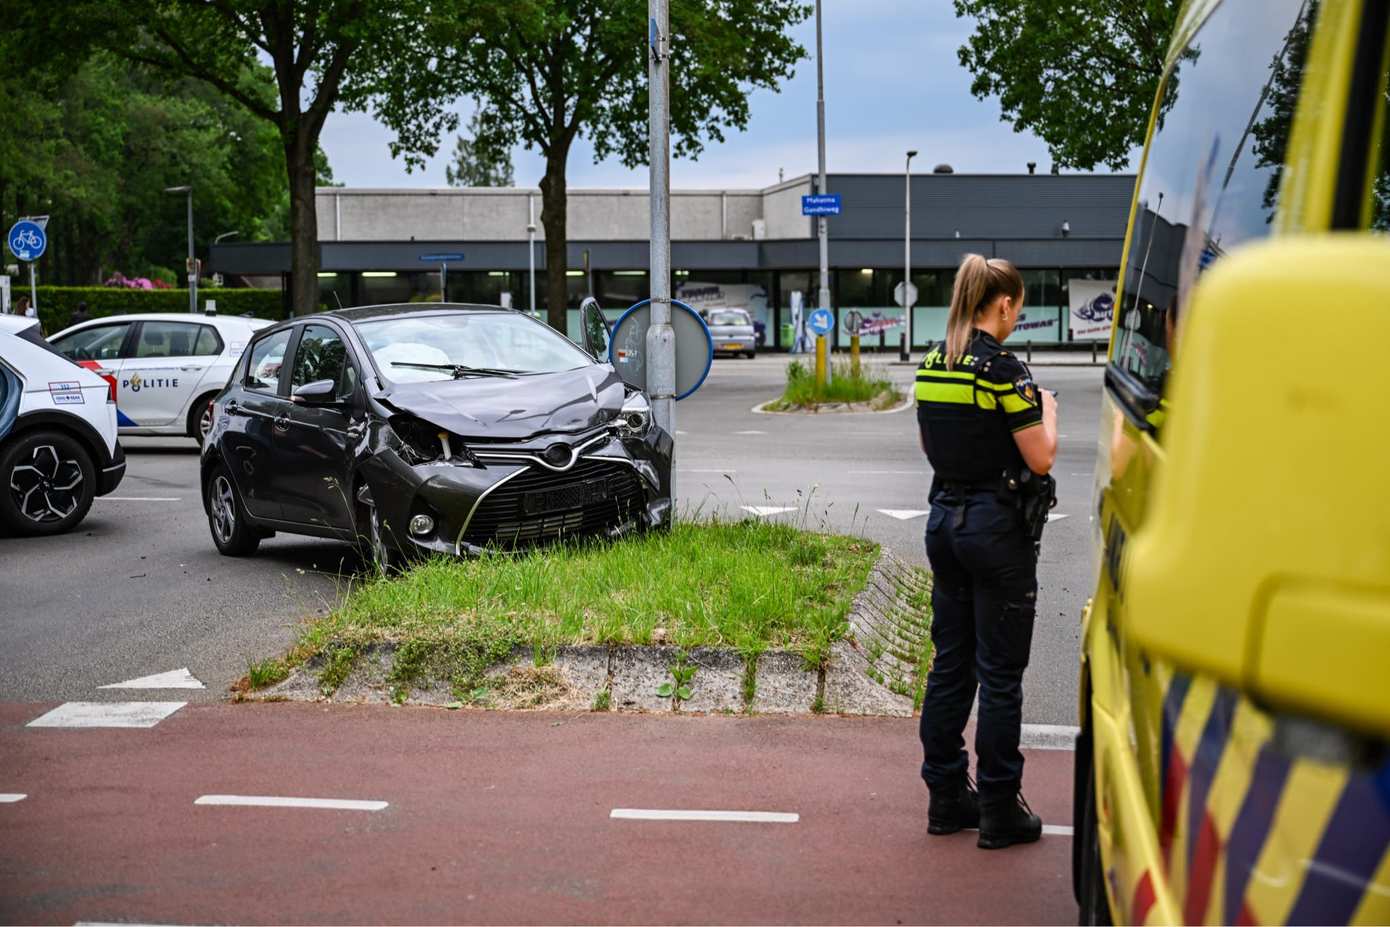 Auto flink beschadigd bij eenzijdig ongeval